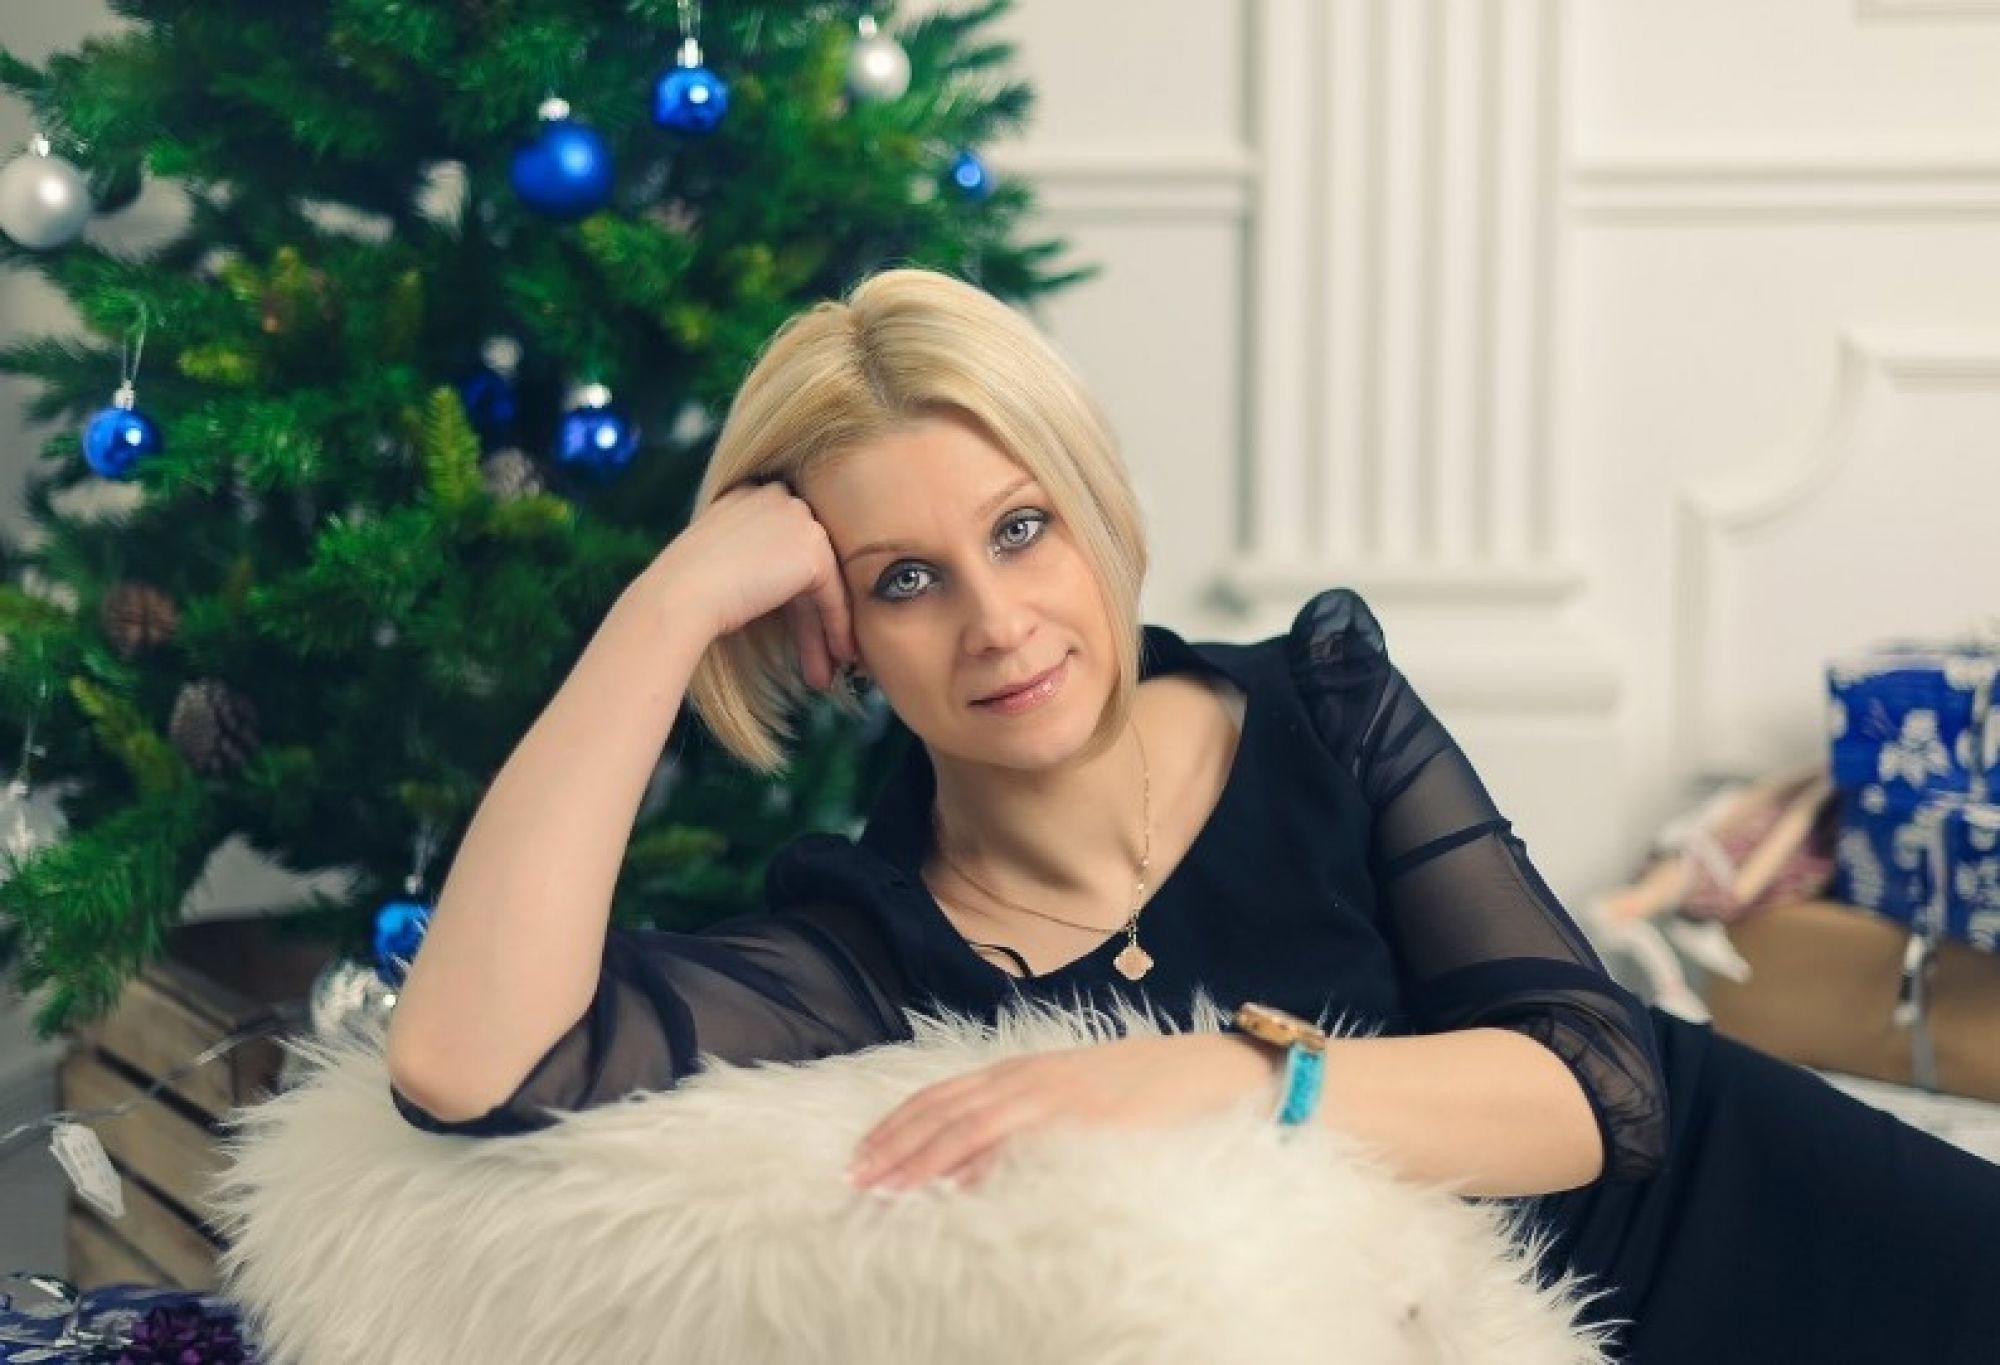 "Я буду бороться до конца": У участницы КВН Евгении Жариковой диагностировали рак на последней стадии